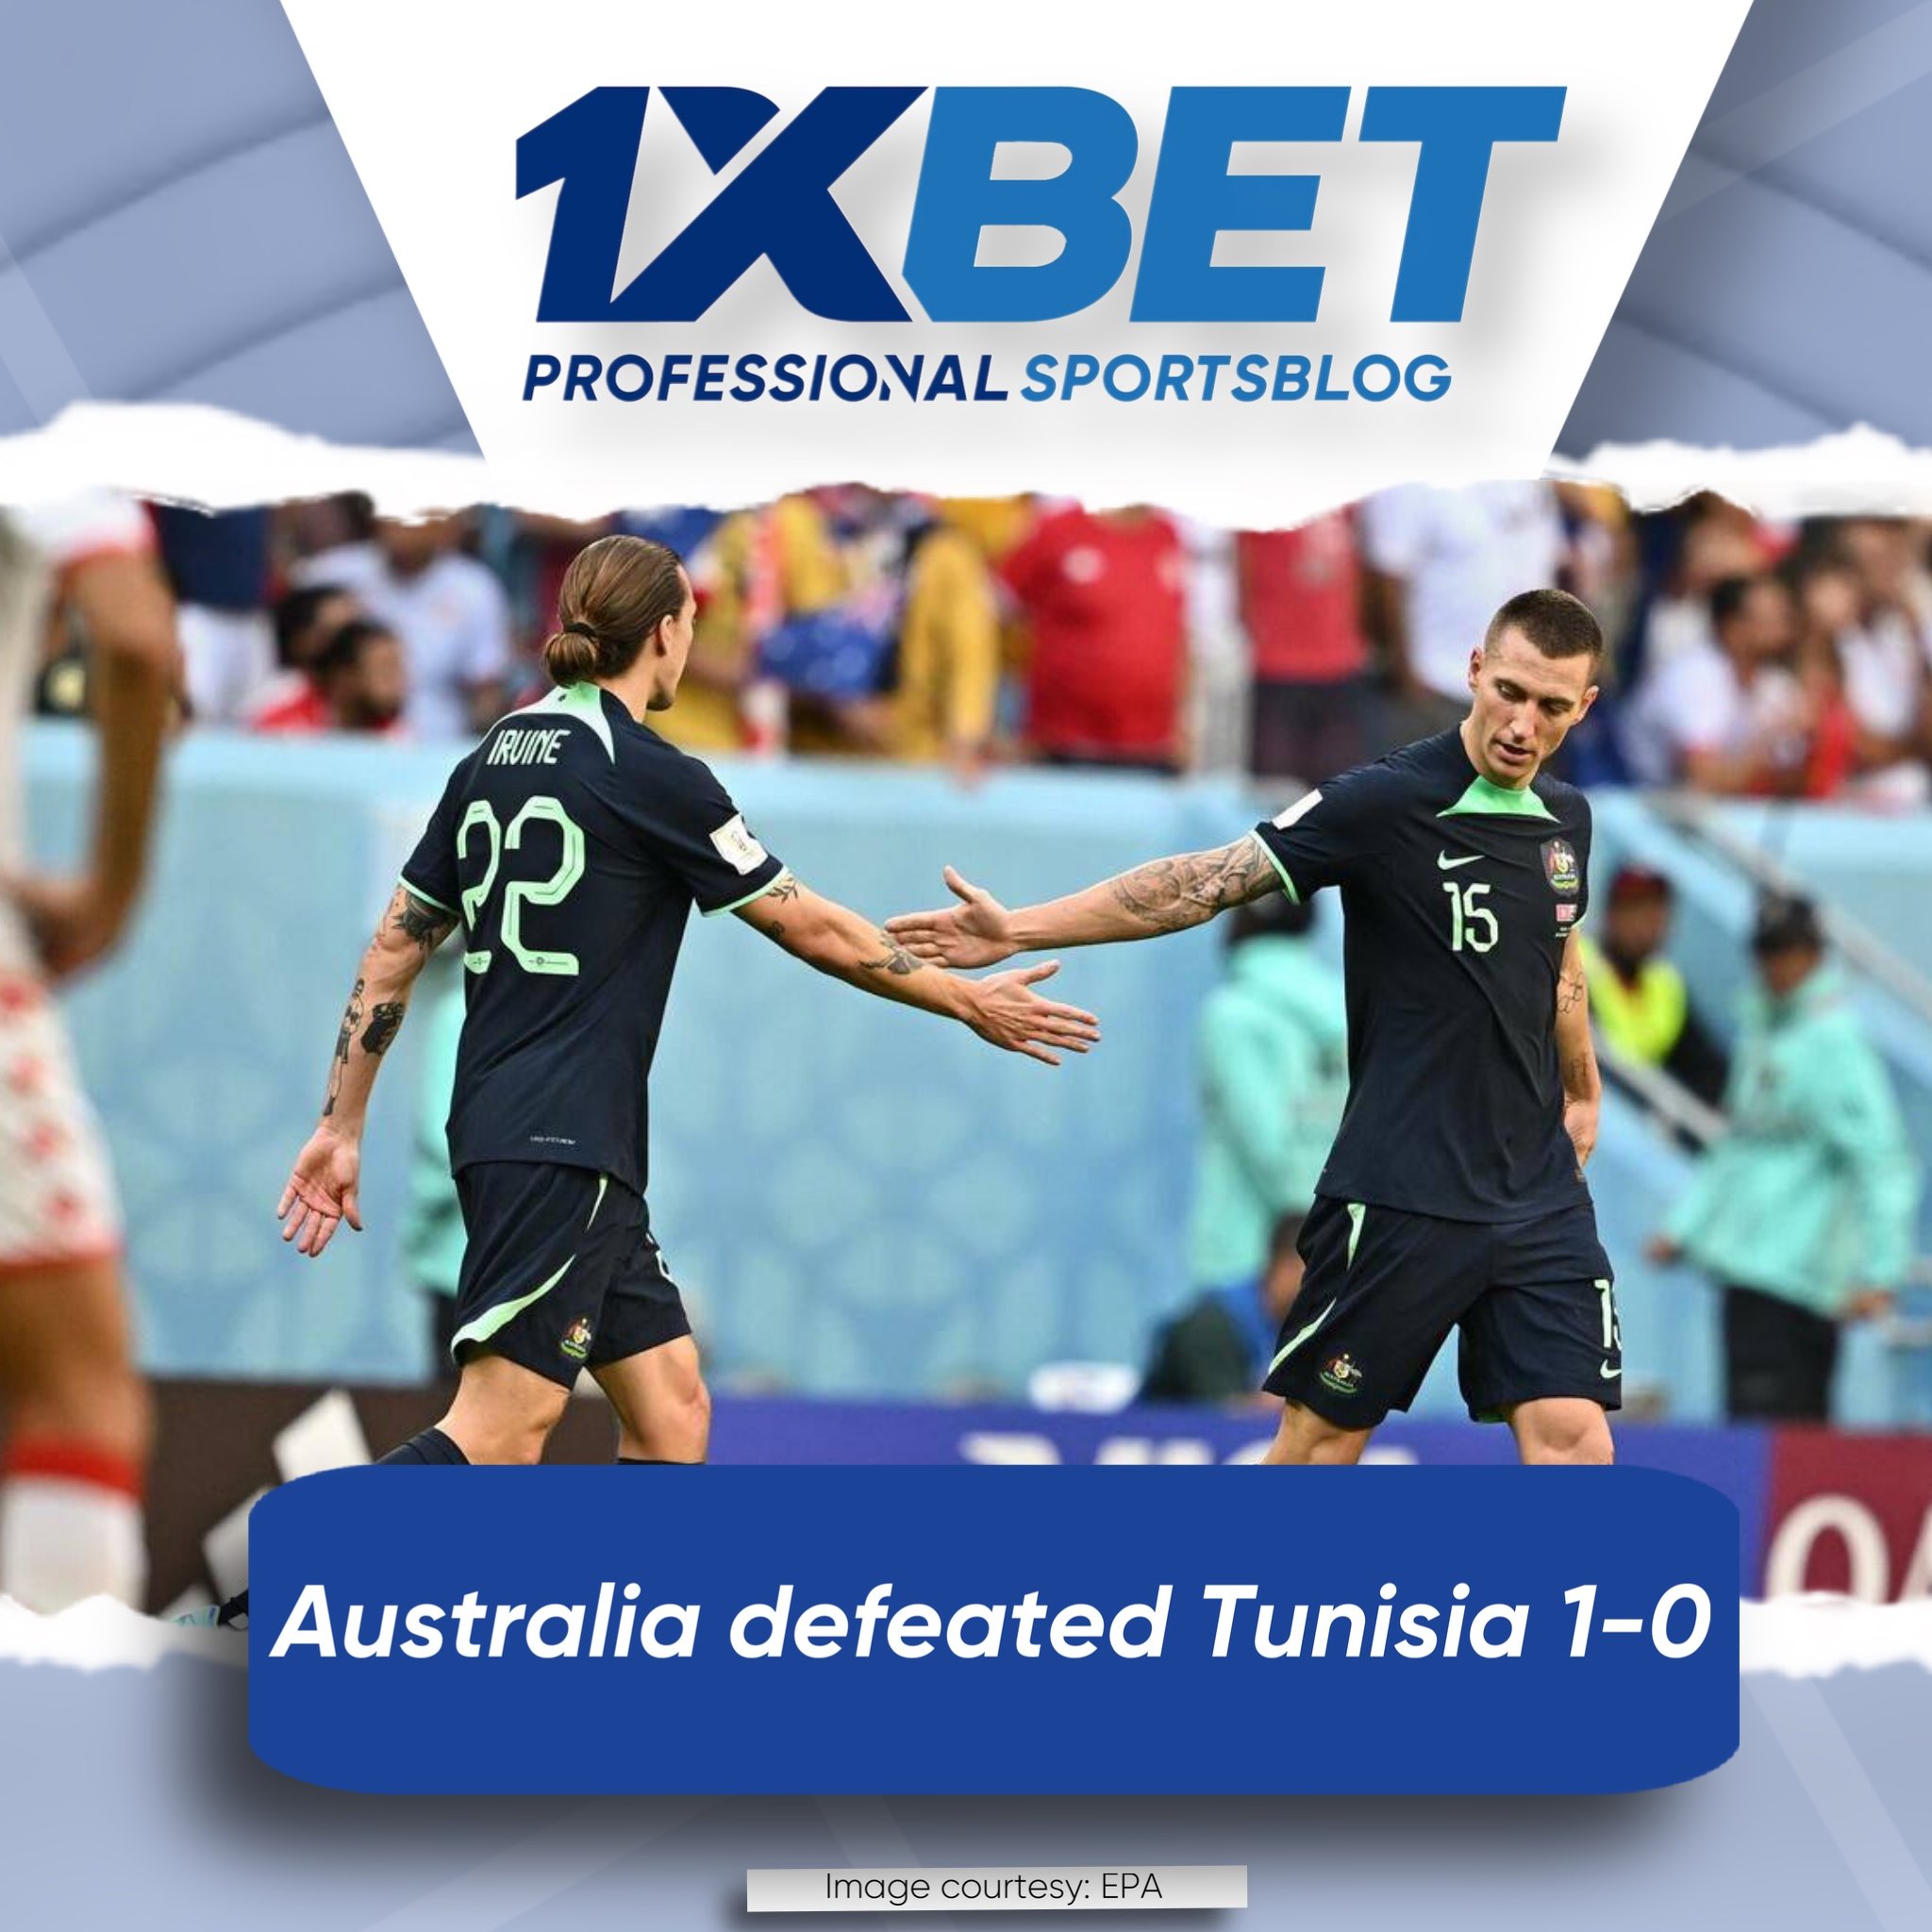 Australia defeated Tunisia 1-0